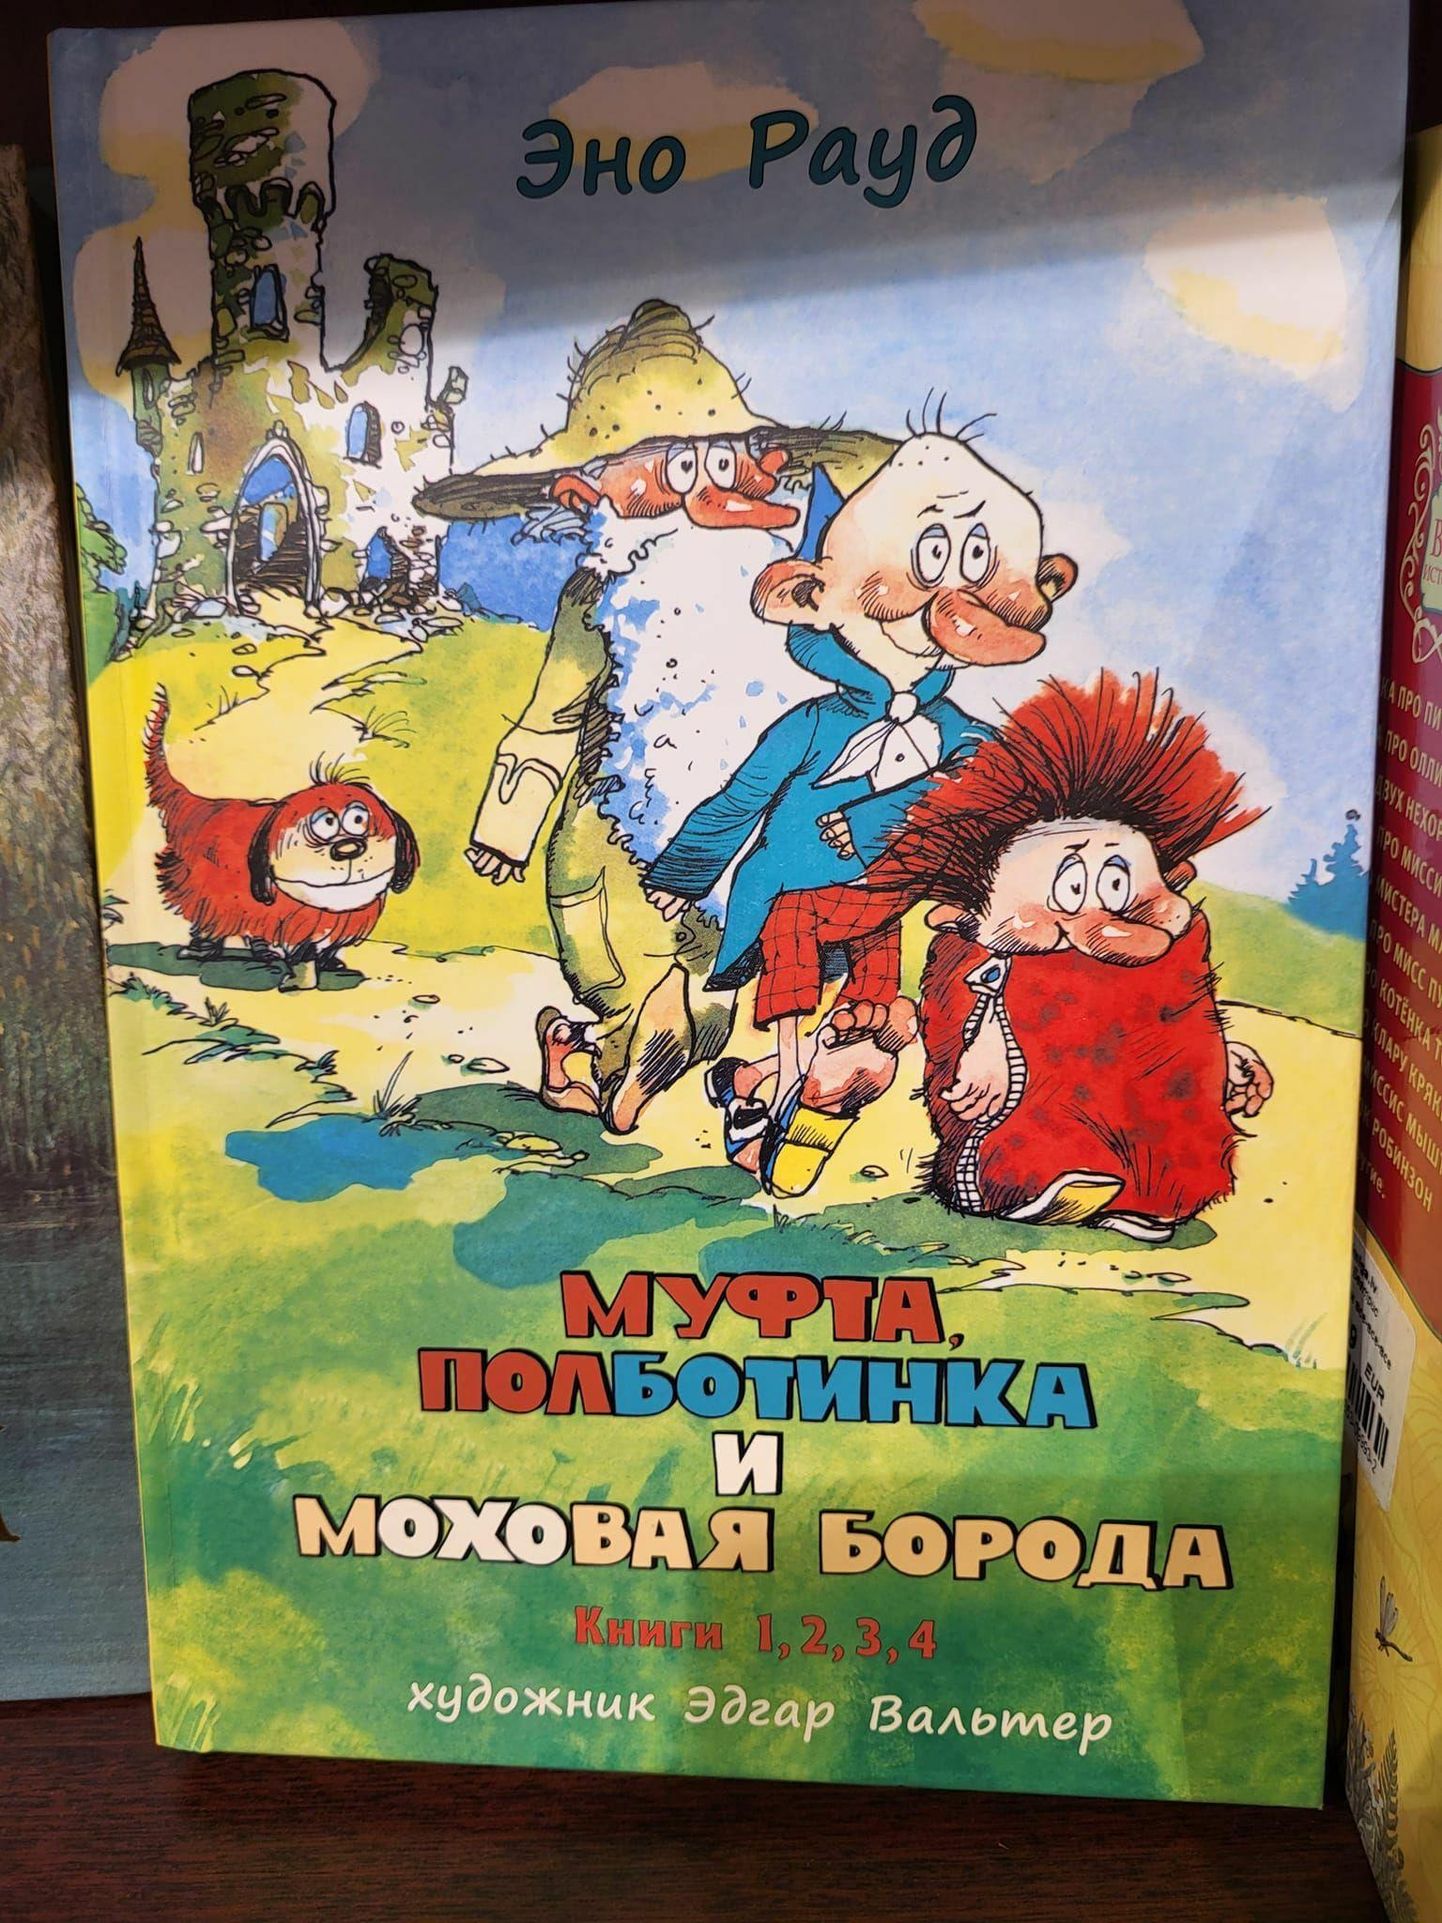 Venekeelsete naksitralli-raamatu hinnaks Lätis on ligi 40 eurot.